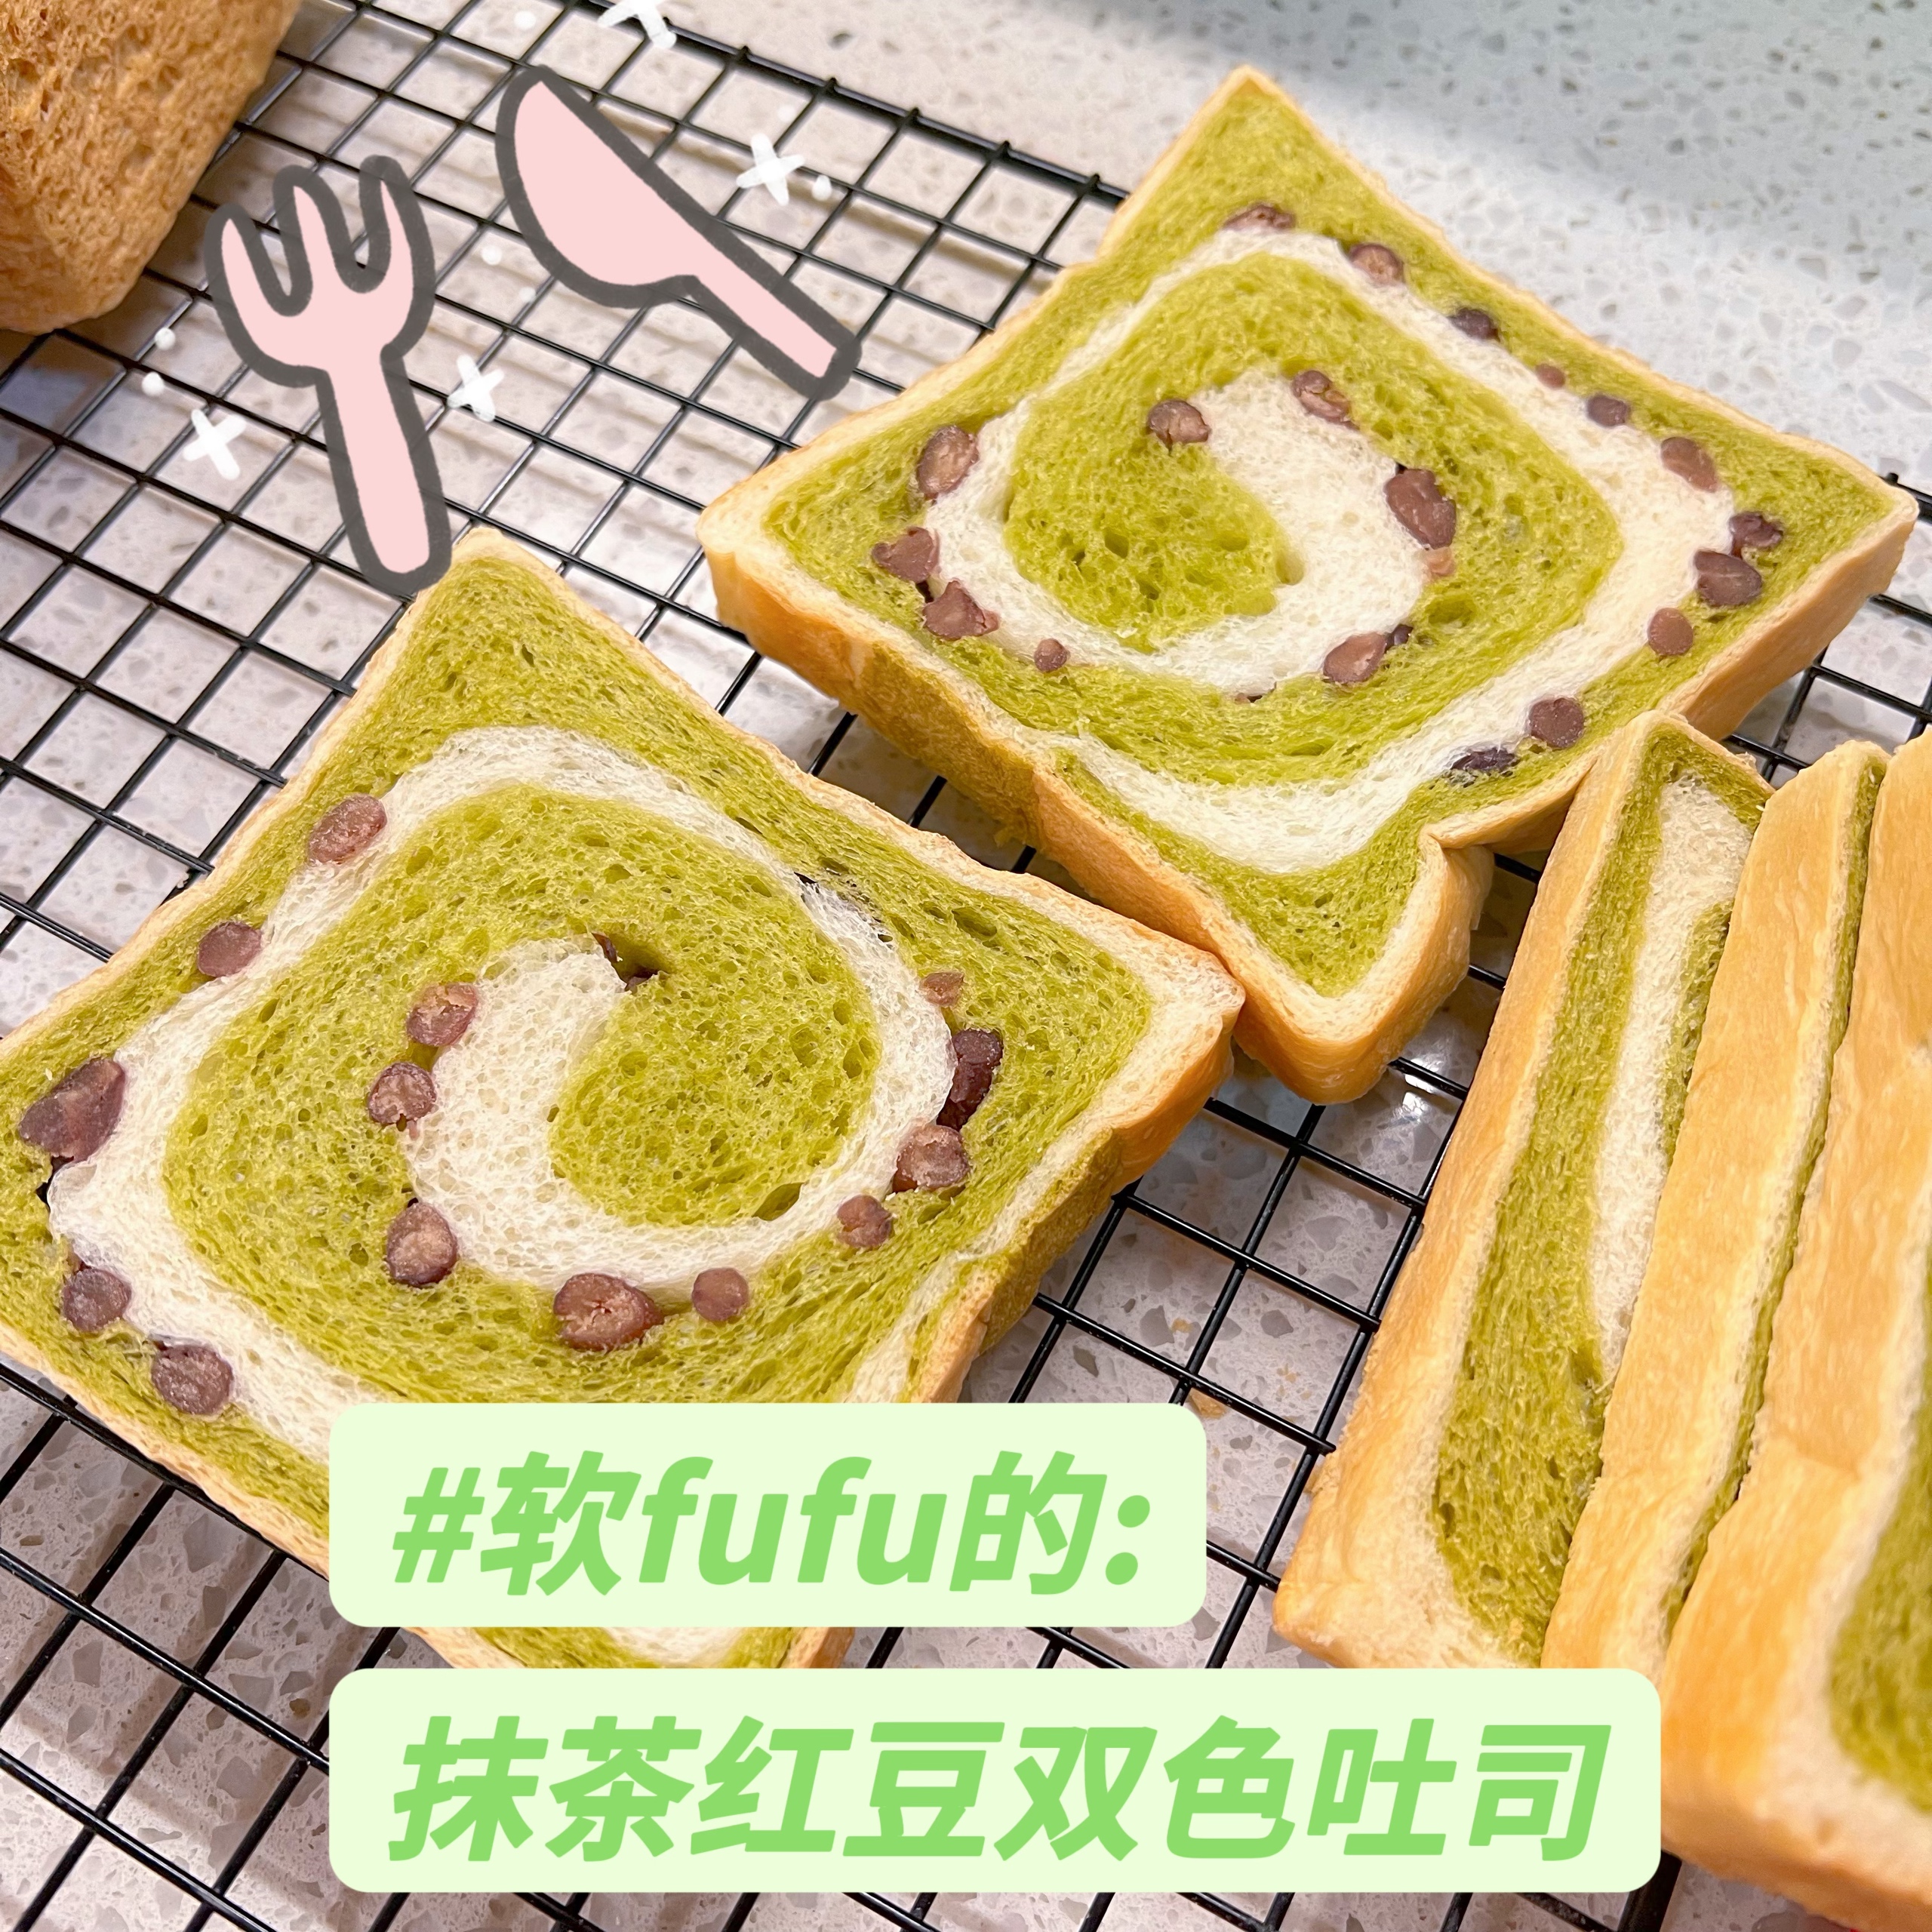 超详细步骤分解配图片视频的软fufu的抹茶红豆双色吐司